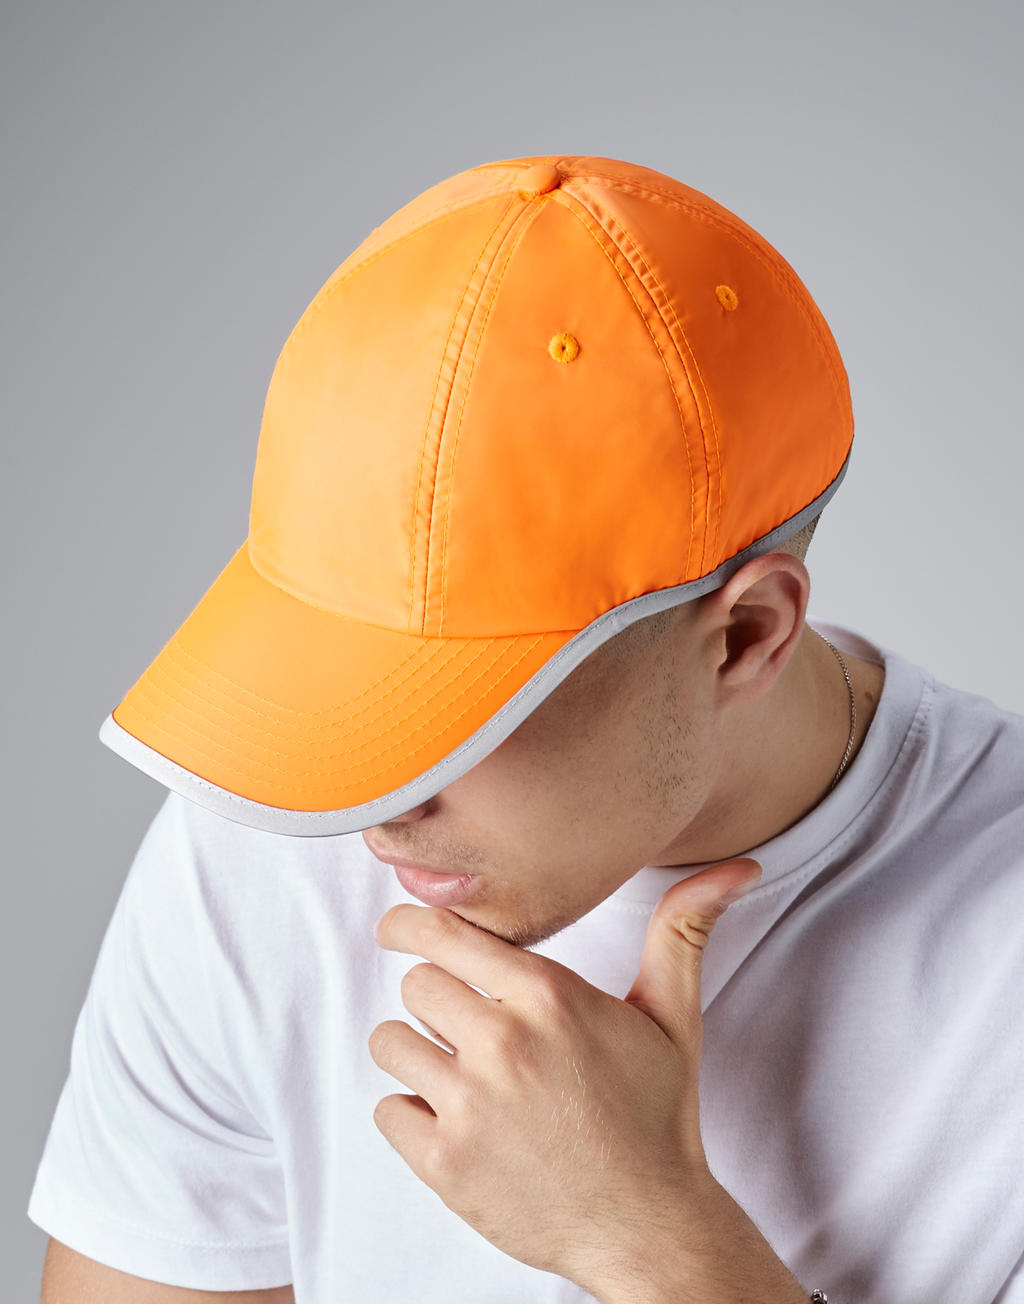  Enhanced-Viz Cap in Farbe Fluorescent Orange